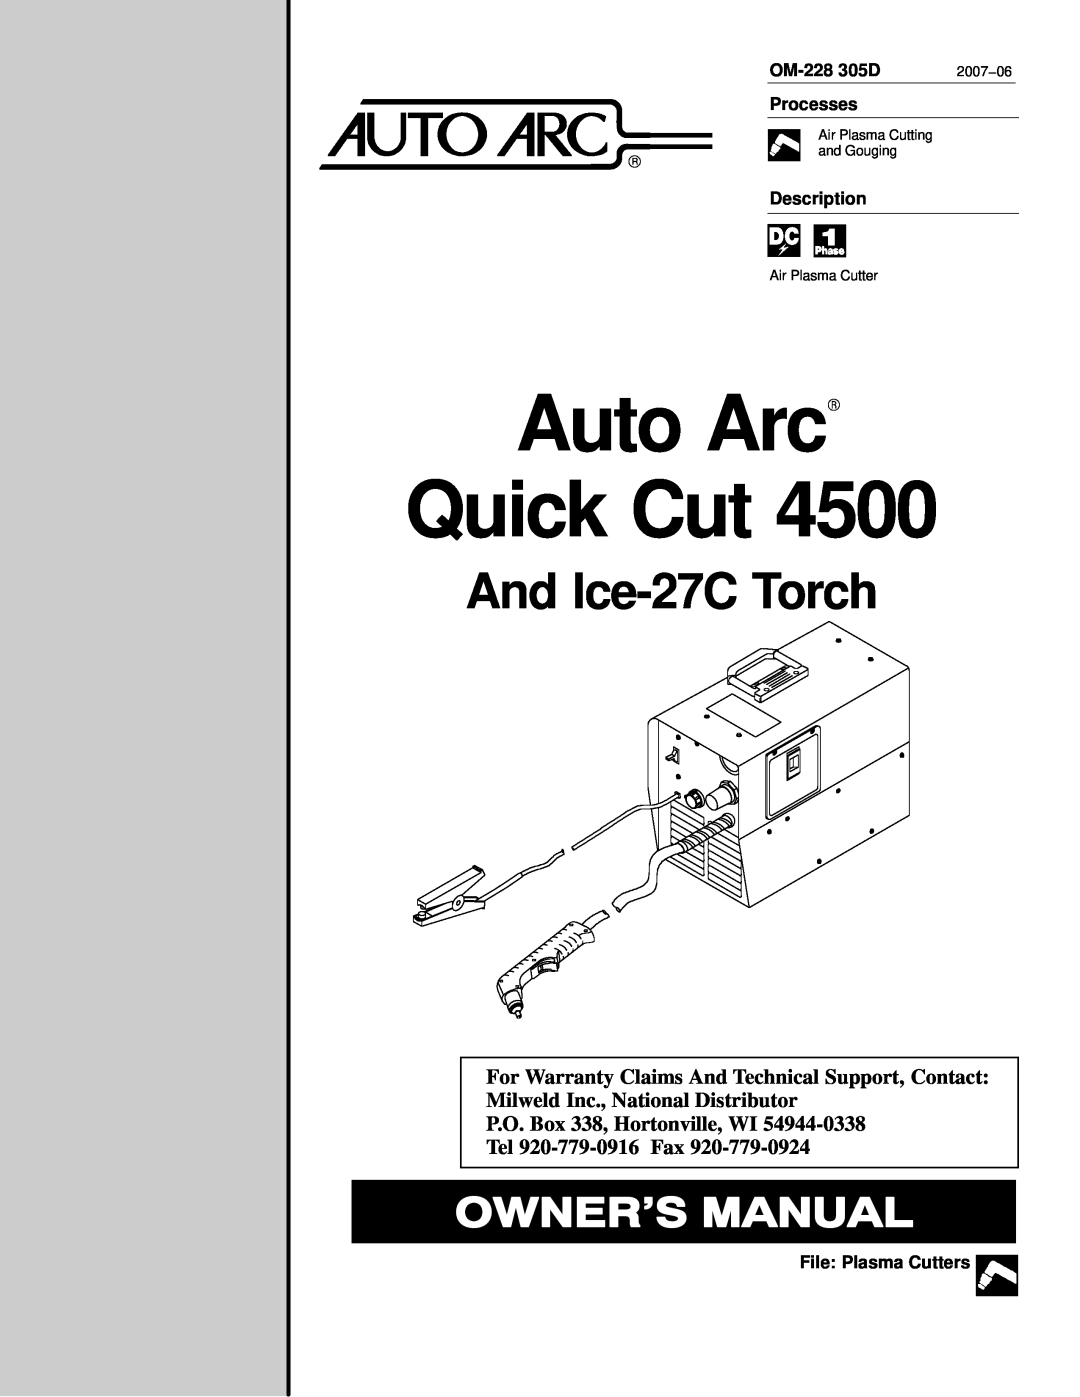 Miller Electric pmn warranty OM-228 305D, Processes, Description, File Plasma Cutters, Auto ArcR Quick Cut, 2007−06 